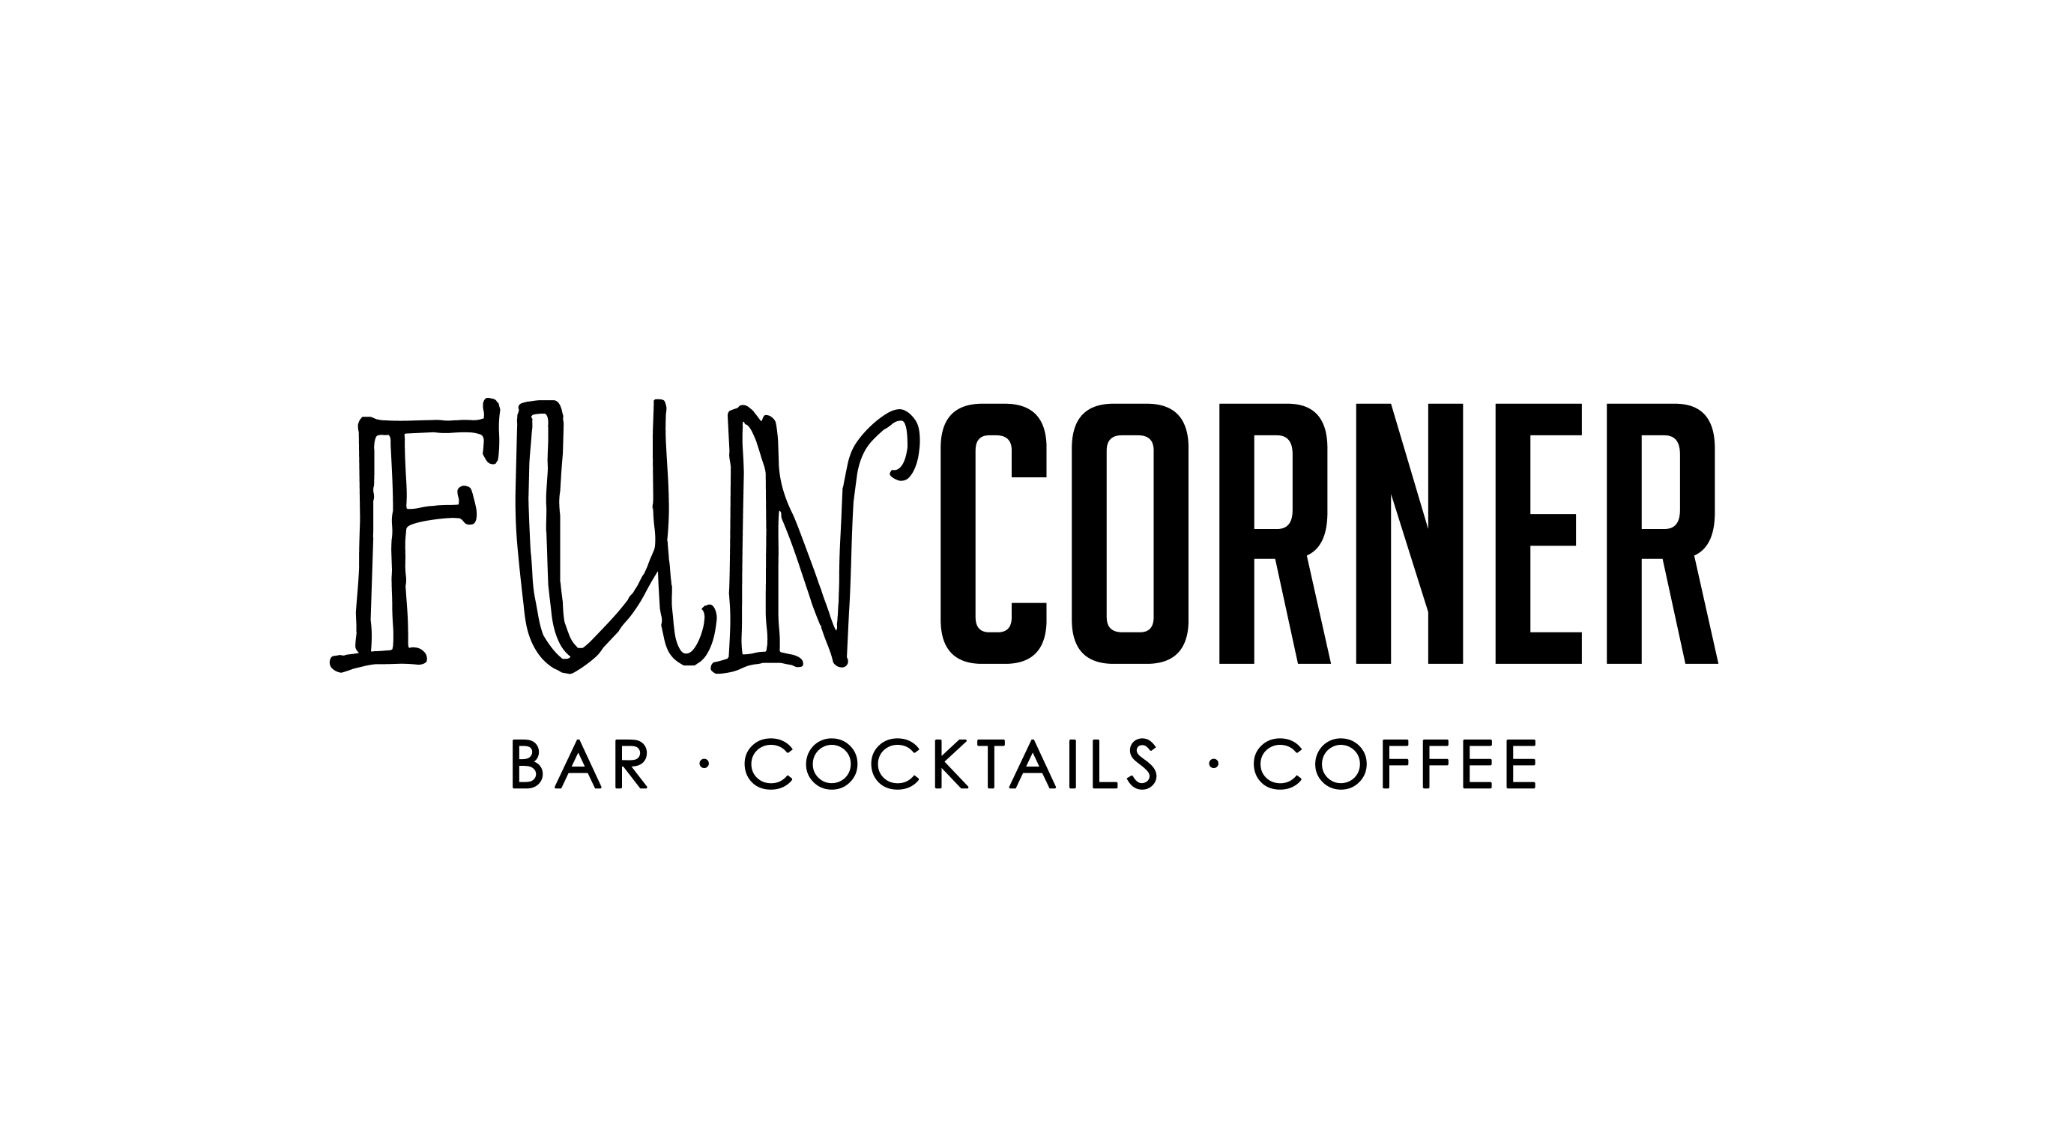 Fun corner